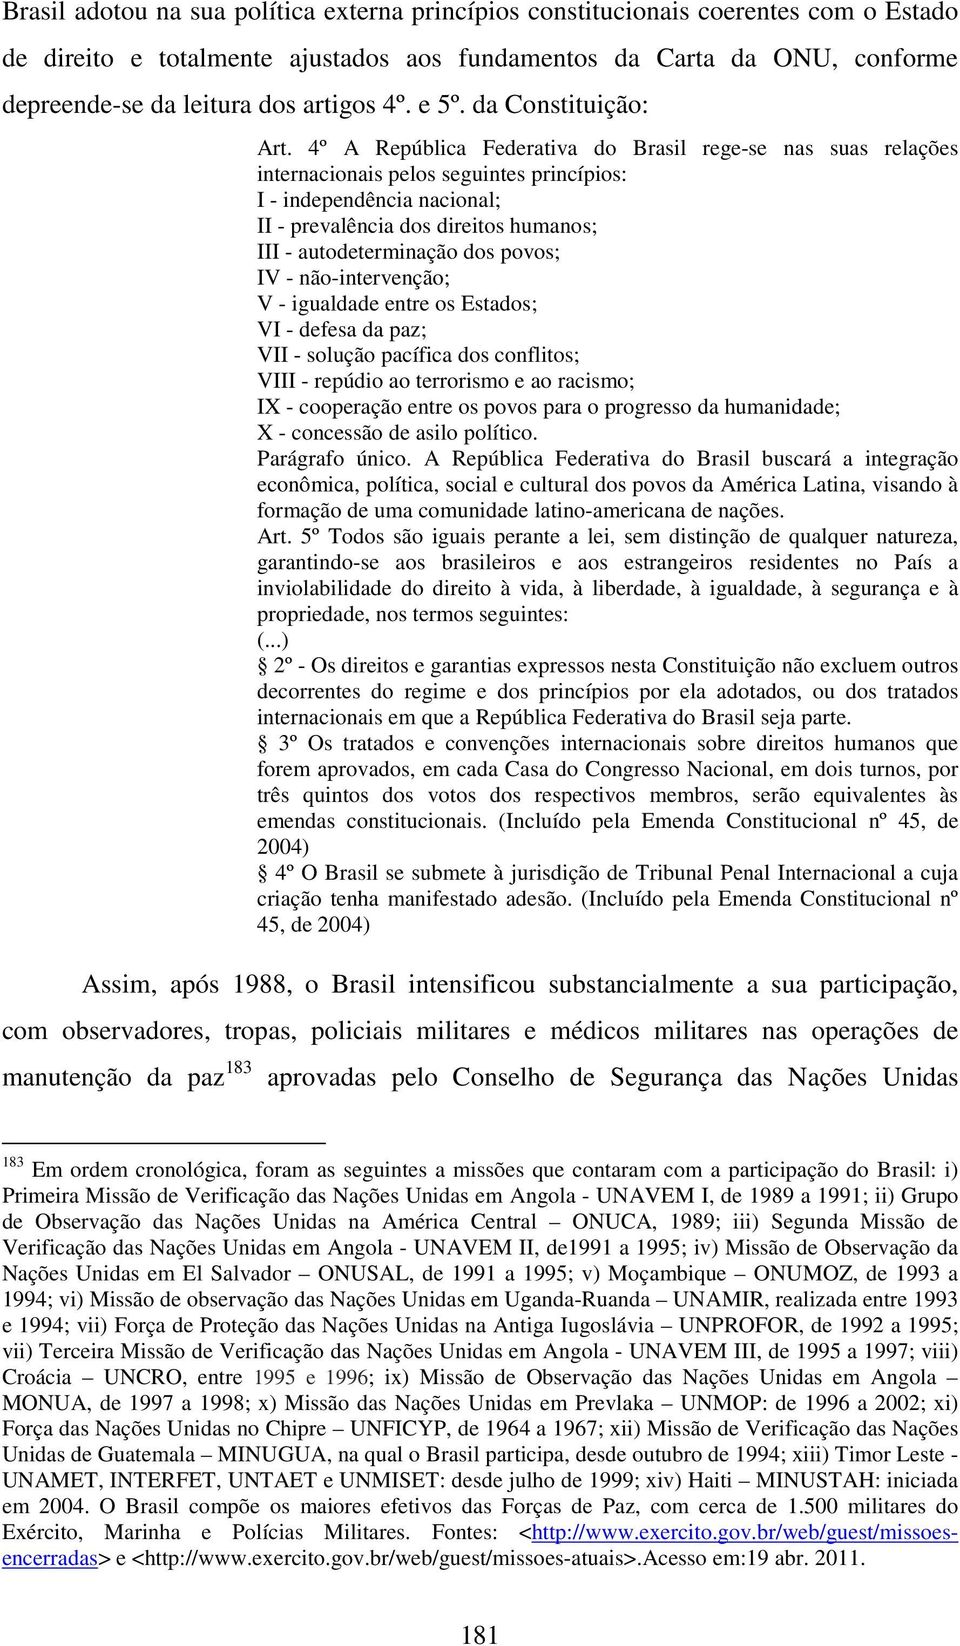 4º A República Federativa do Brasil rege-se nas suas relações internacionais pelos seguintes princípios: I - independência nacional; II - prevalência dos direitos humanos; III - autodeterminação dos